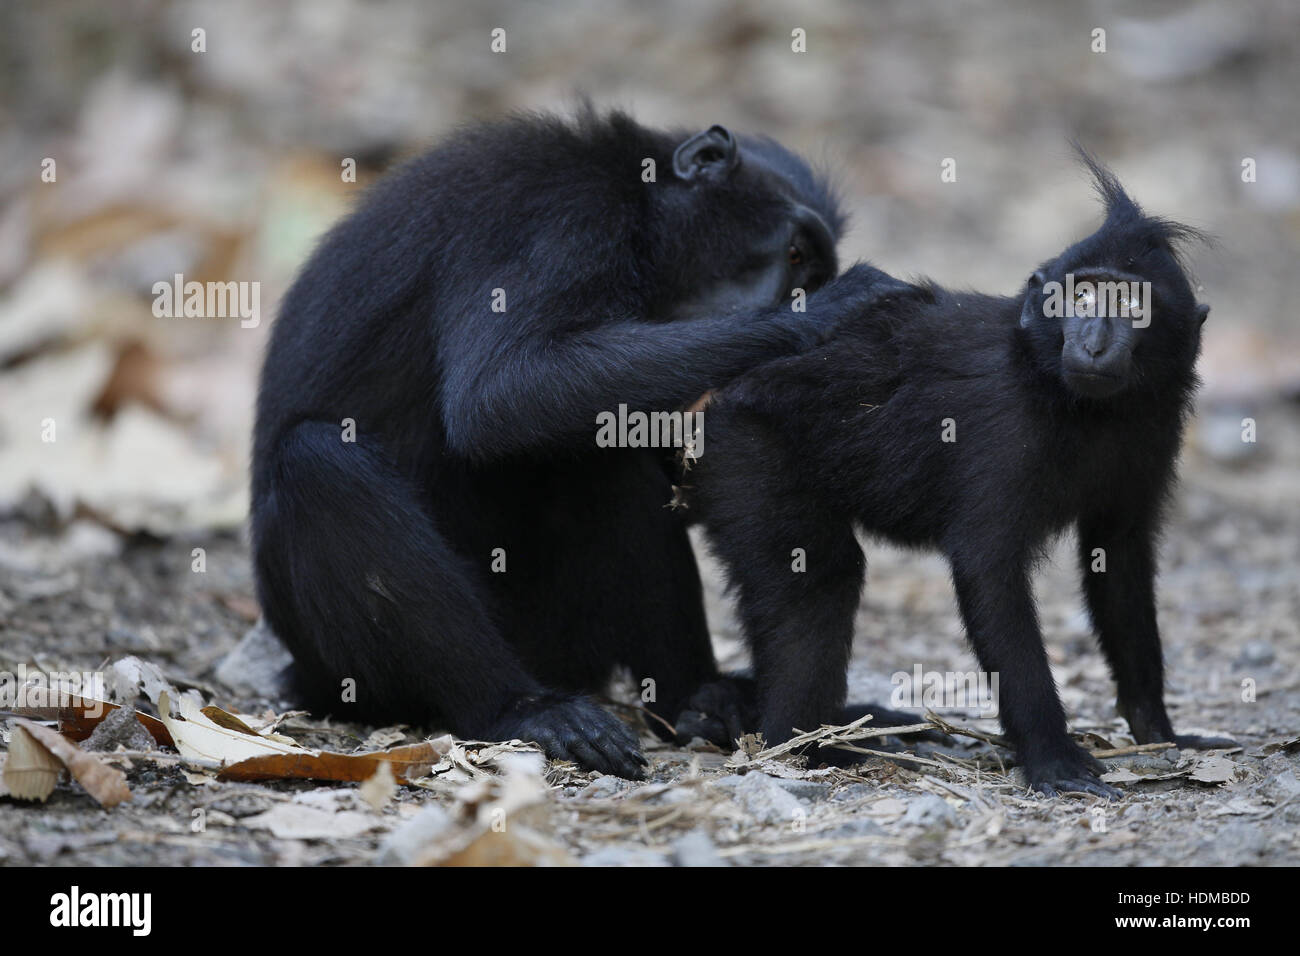 Les Célèbes Crested Macaque, Macaca nigra, jeune toilettage adultes Banque D'Images